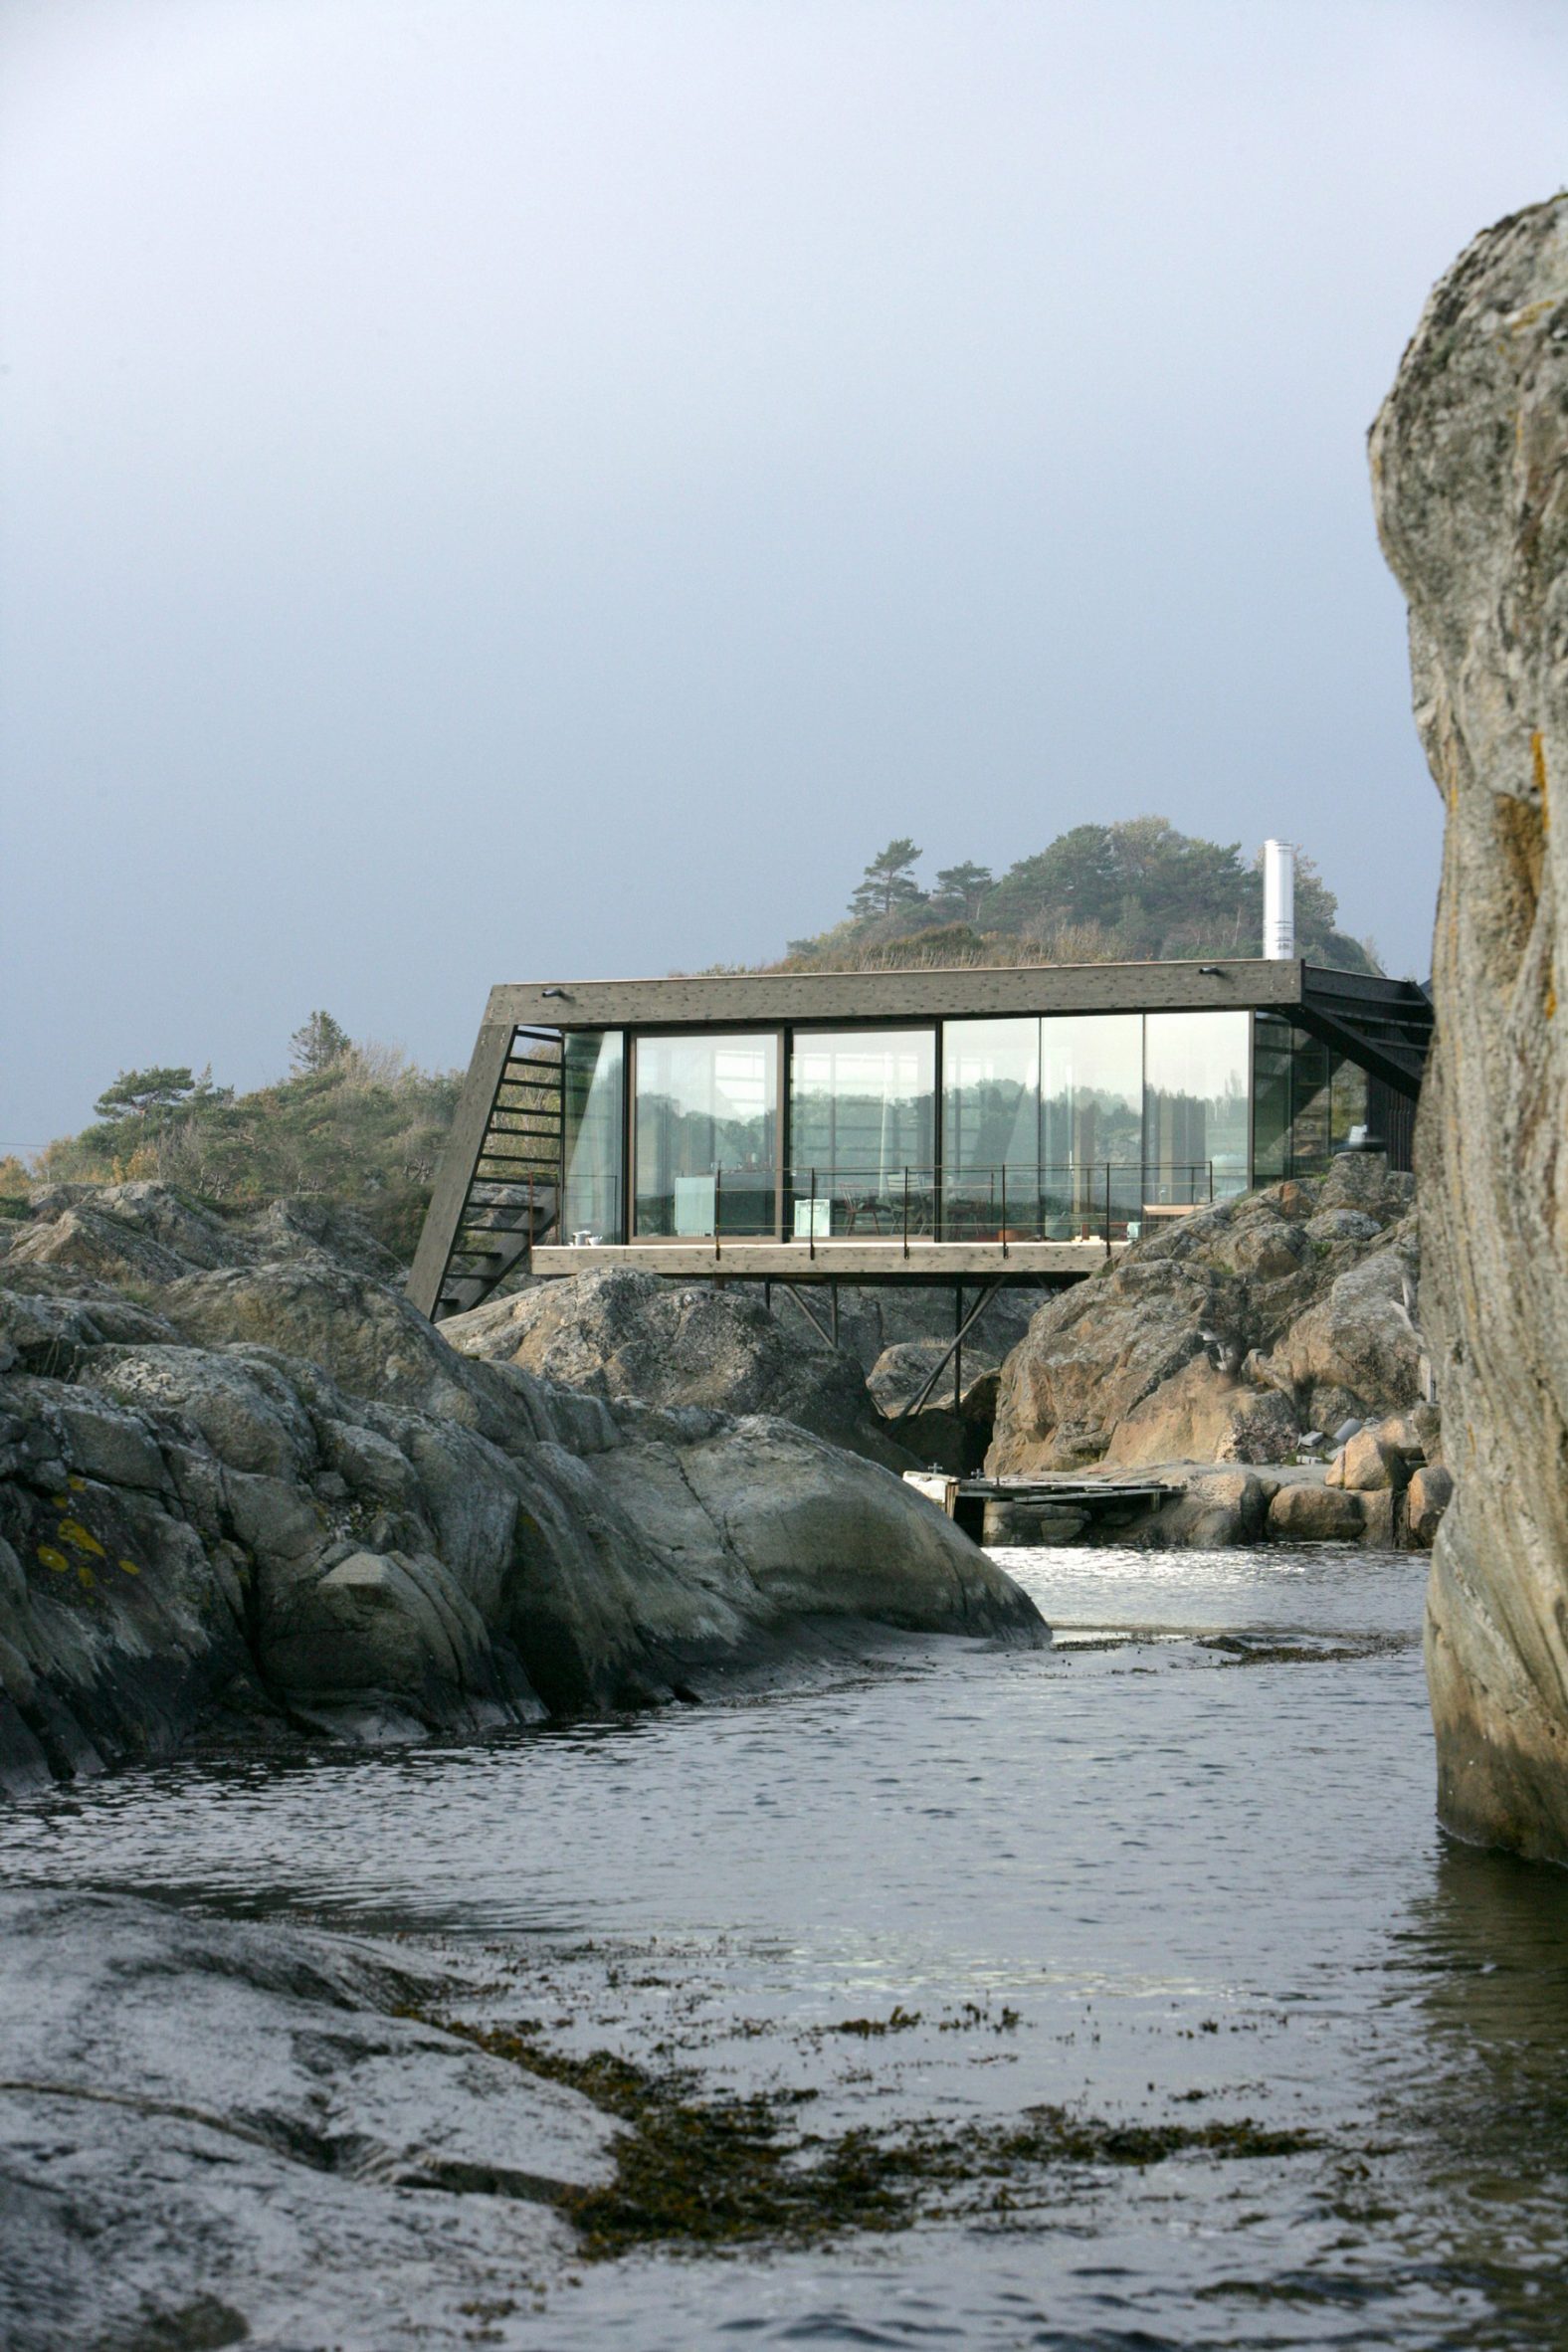 Cabin Lille Arøya, Norway, by Lund Hagem